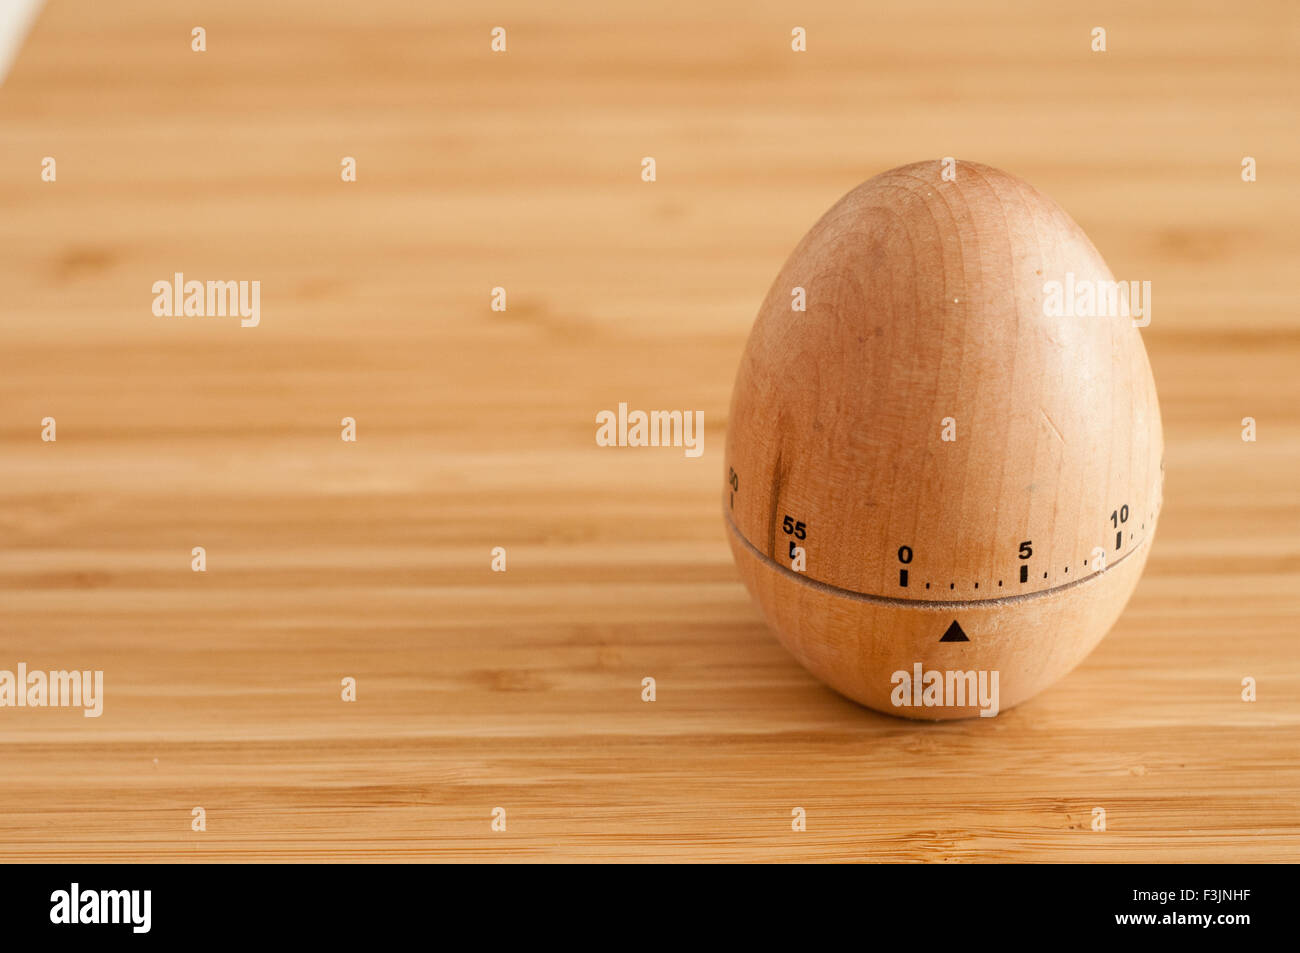 Eieruhr auf einer Holzfläche in natürlichem Licht Stockfoto